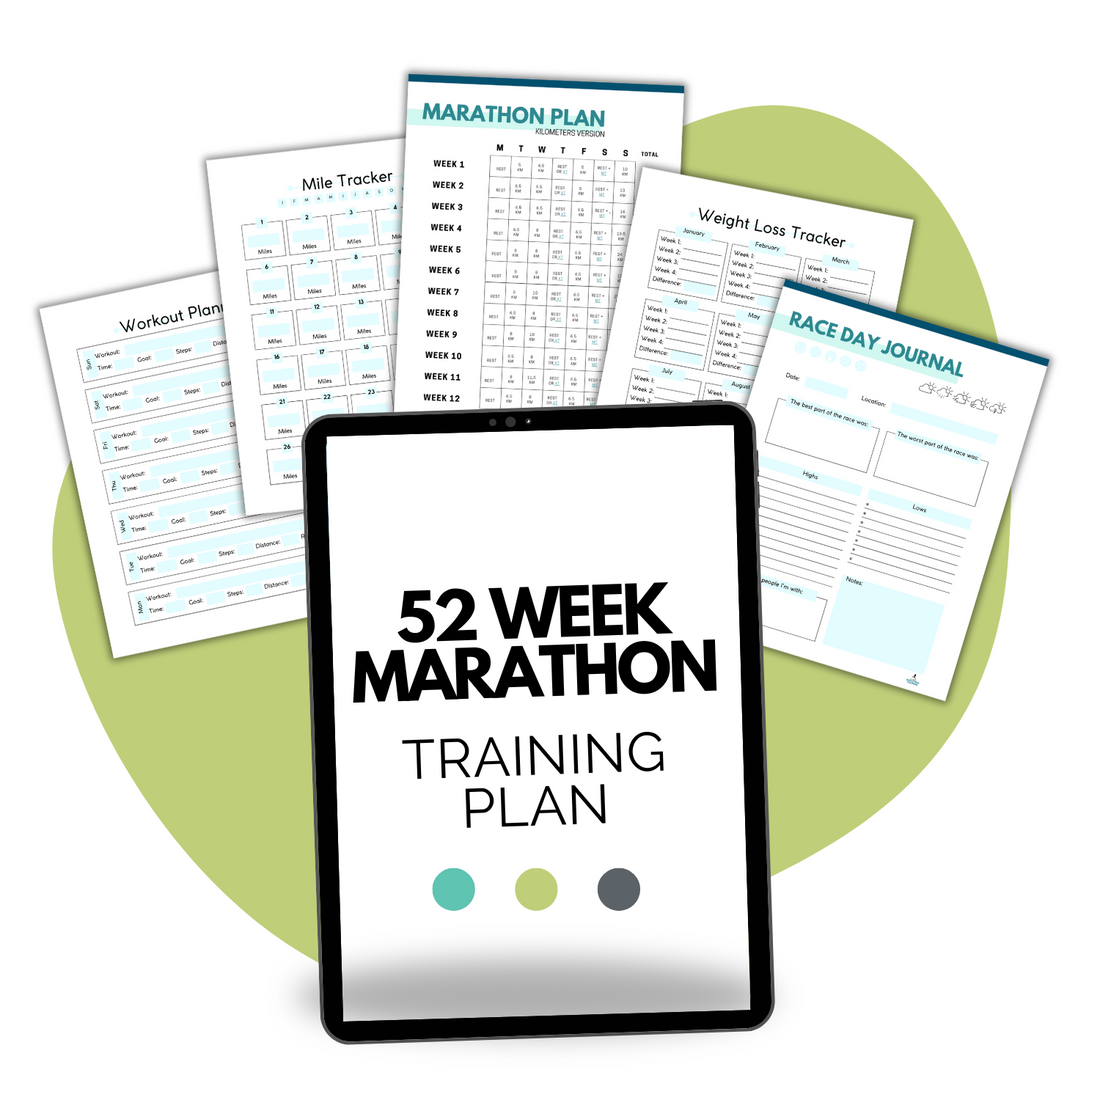 52 Week Marathon Training Plan Mockup